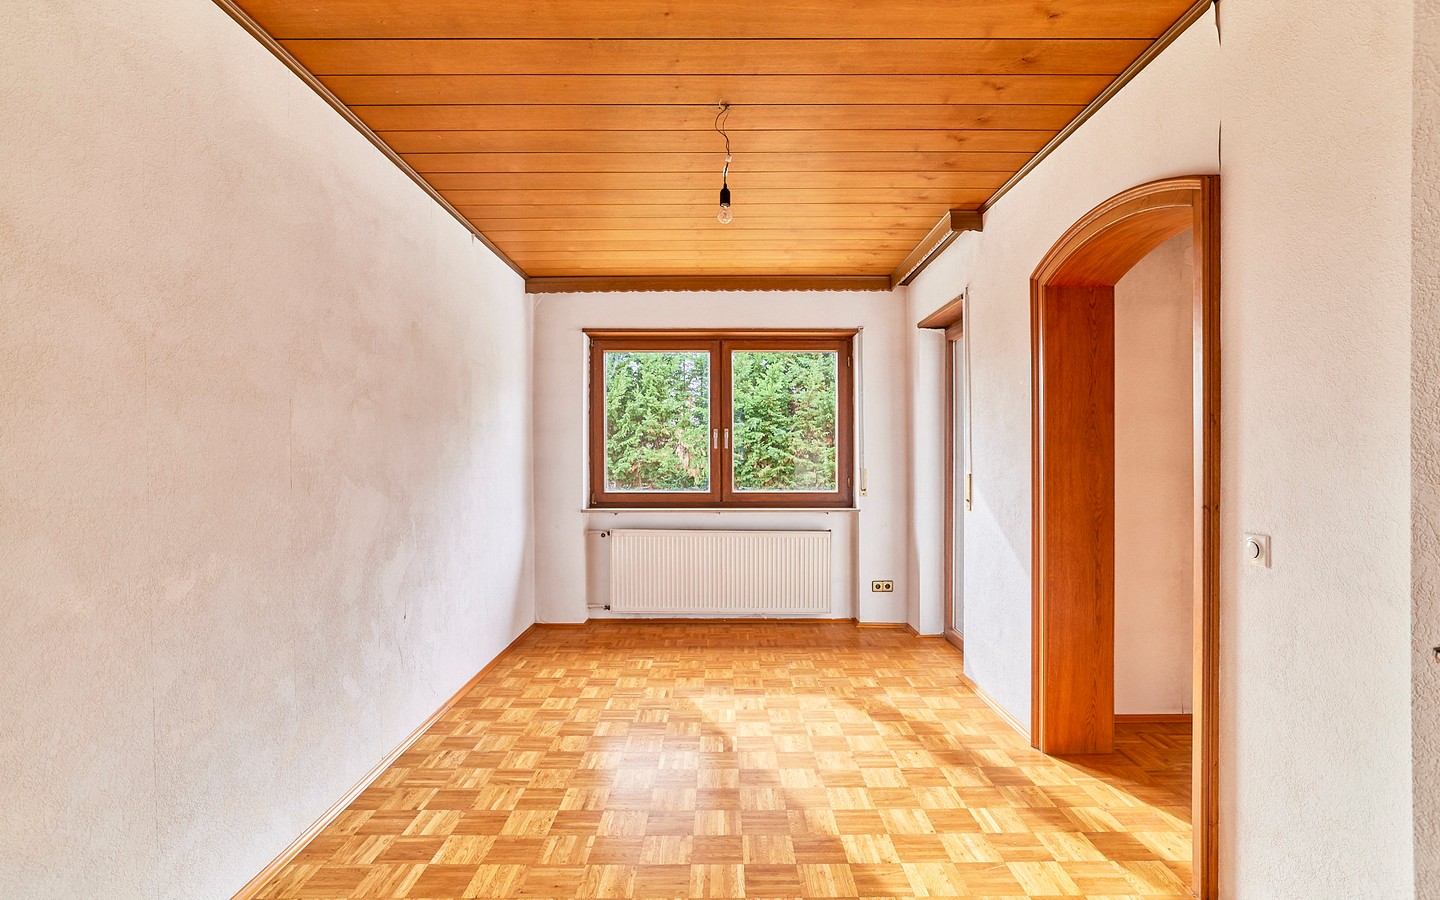 EG Zimmer 2 - Freistehendes Einfamilienhaus mit Garten und Garage in ruhiger Feldrandlage in Neckarhausen